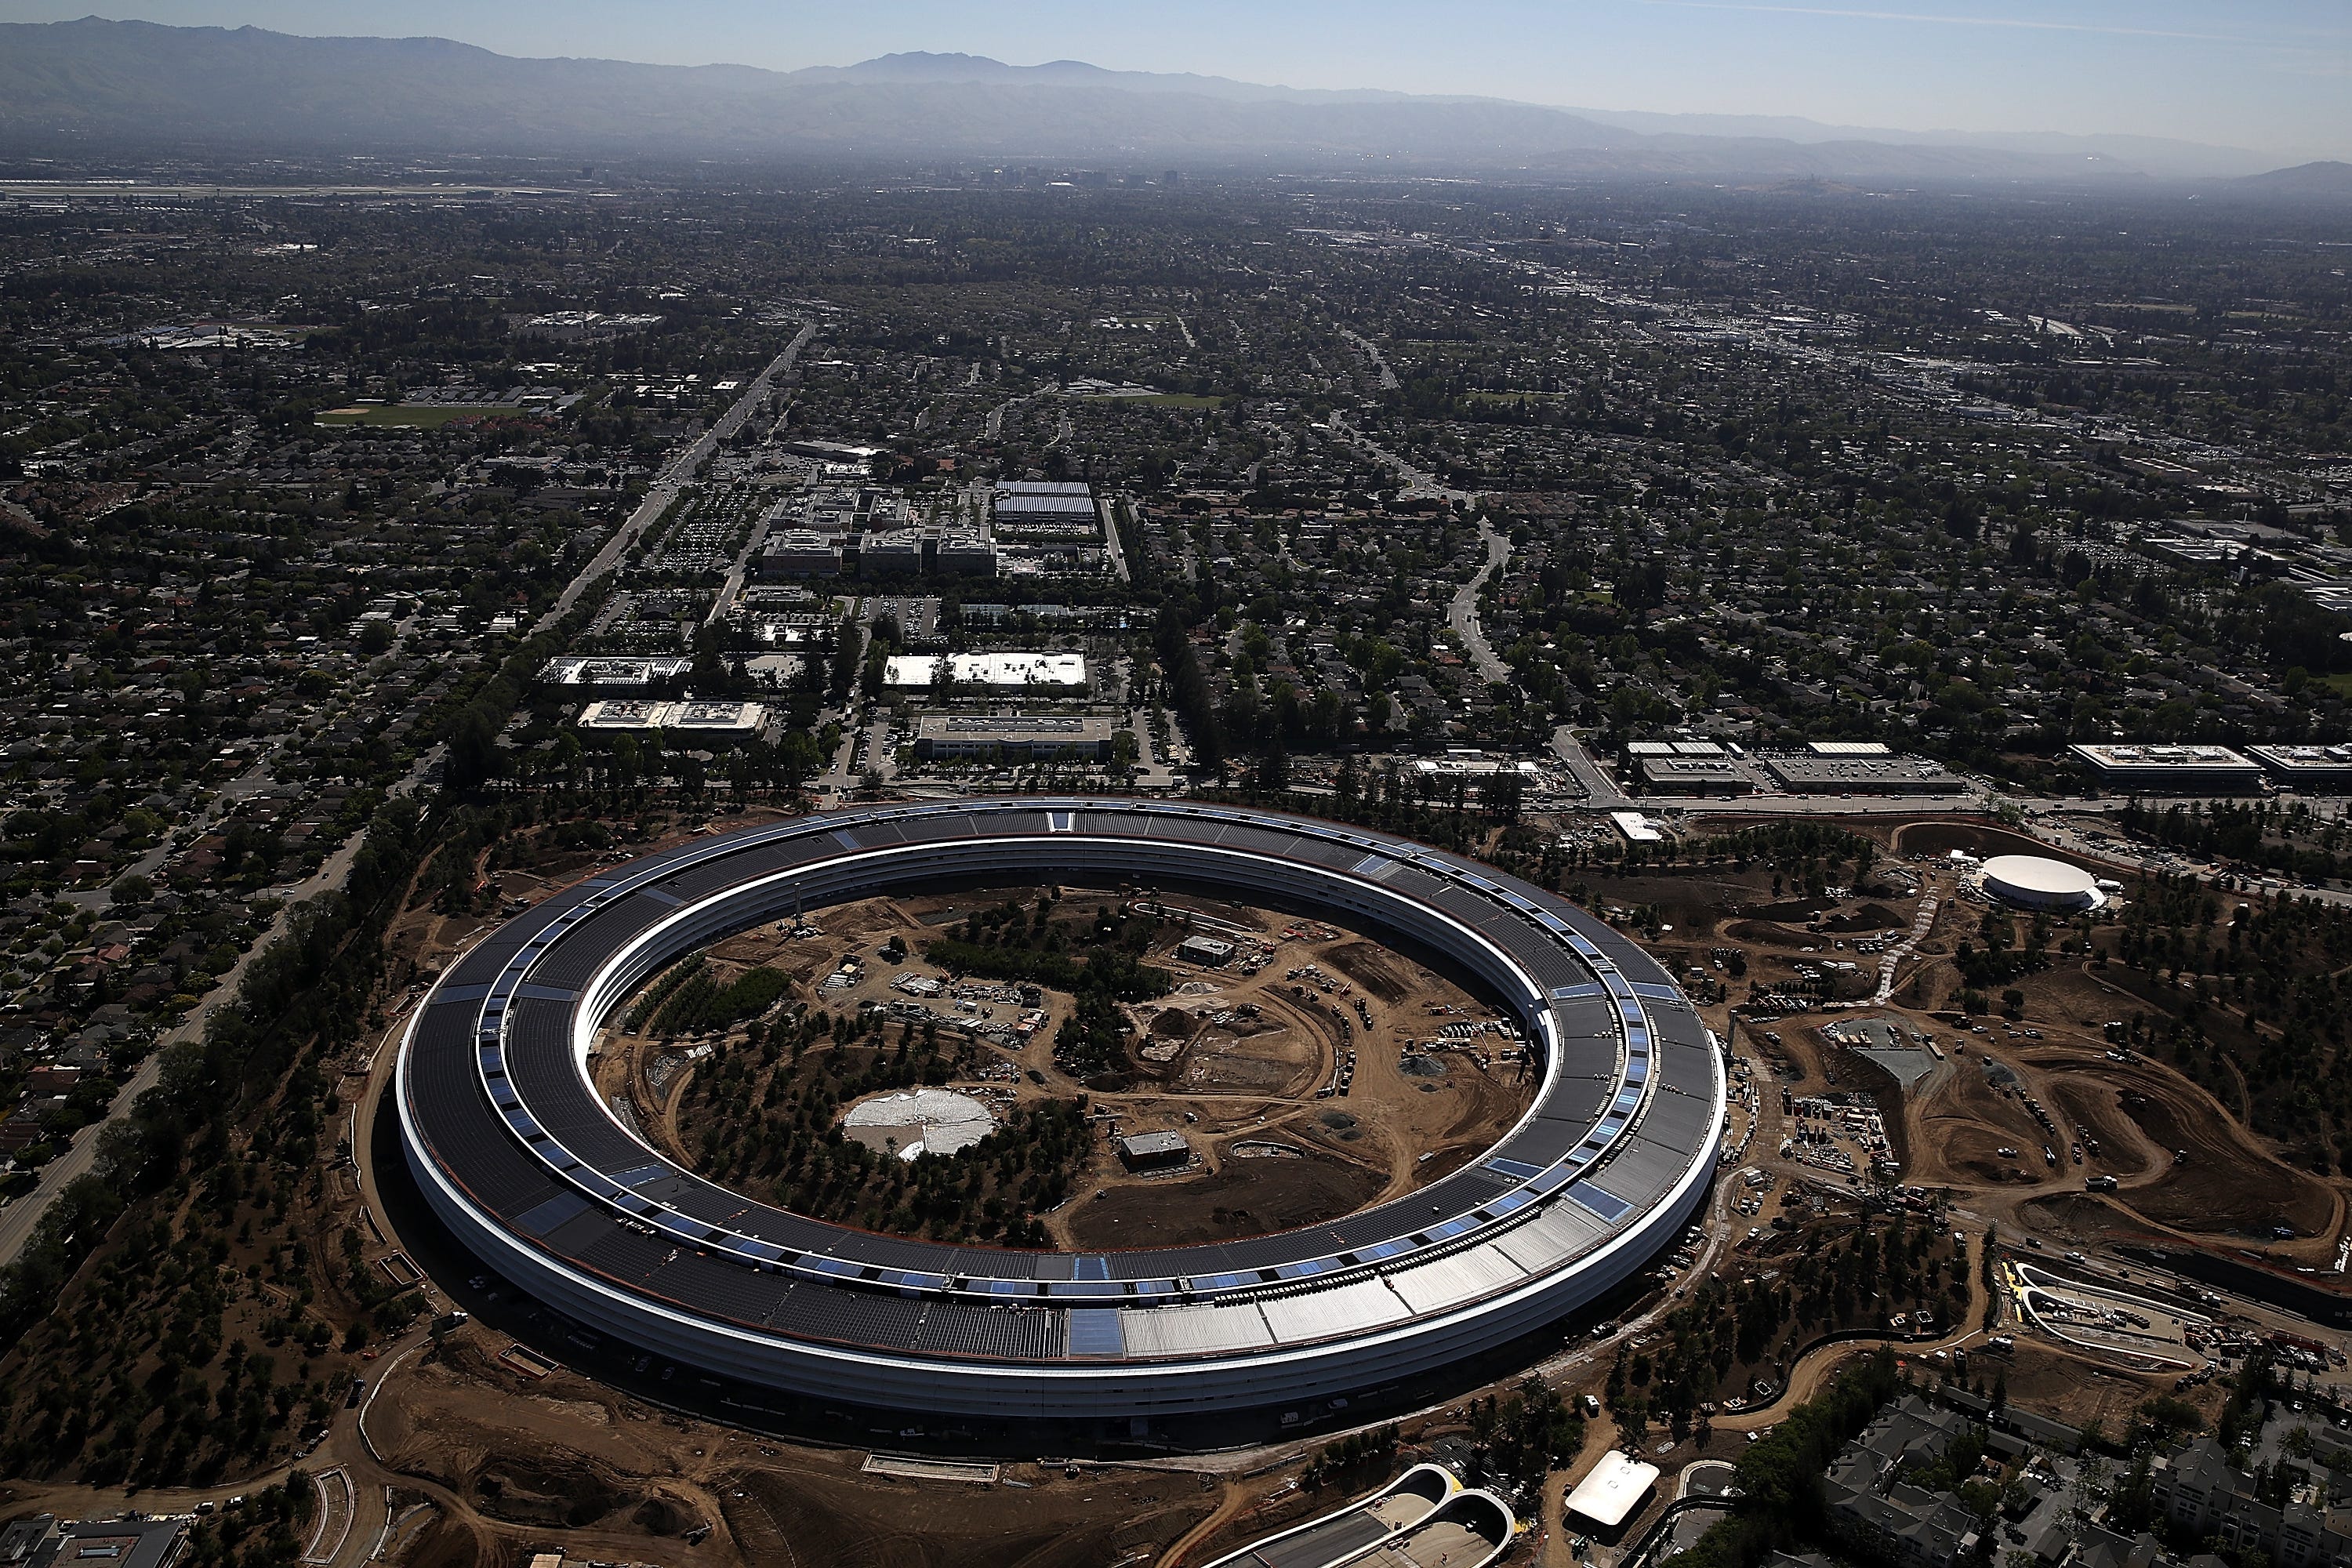 Der Apple-Hauptsitz in Cupertino hat ein kreisförmiges Design wie ein Raumschiff